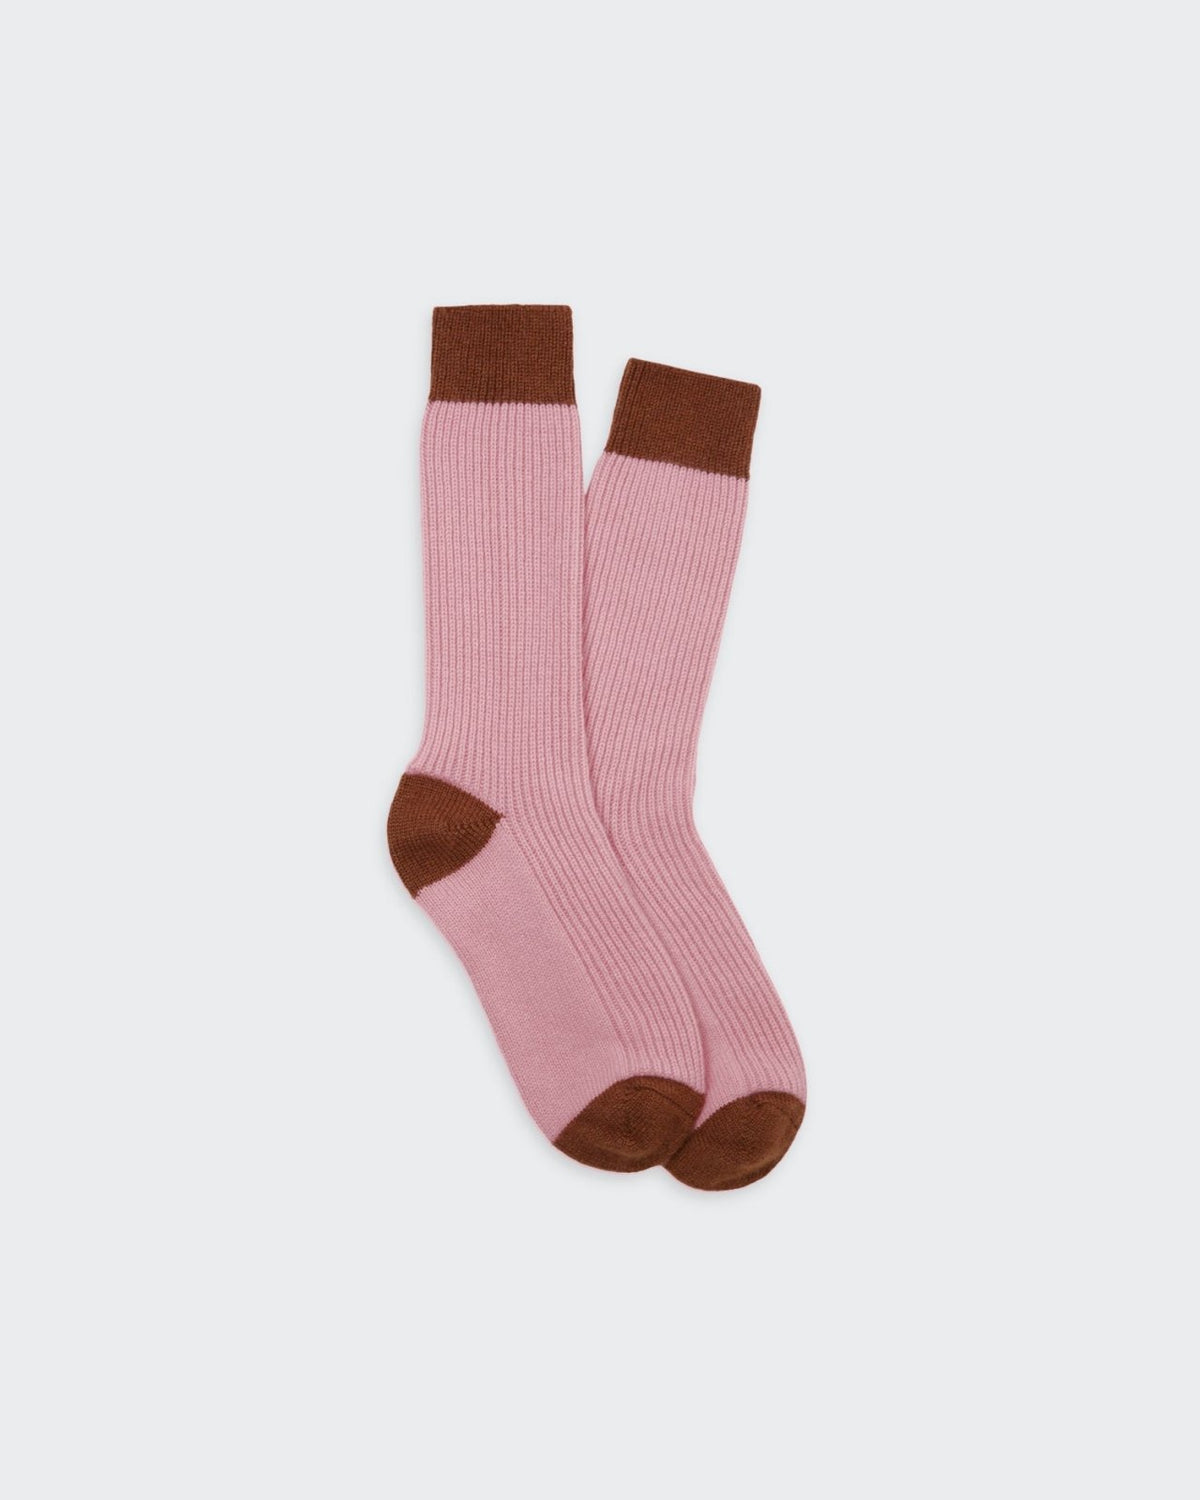 The Soft Socks - Blush/Walnut